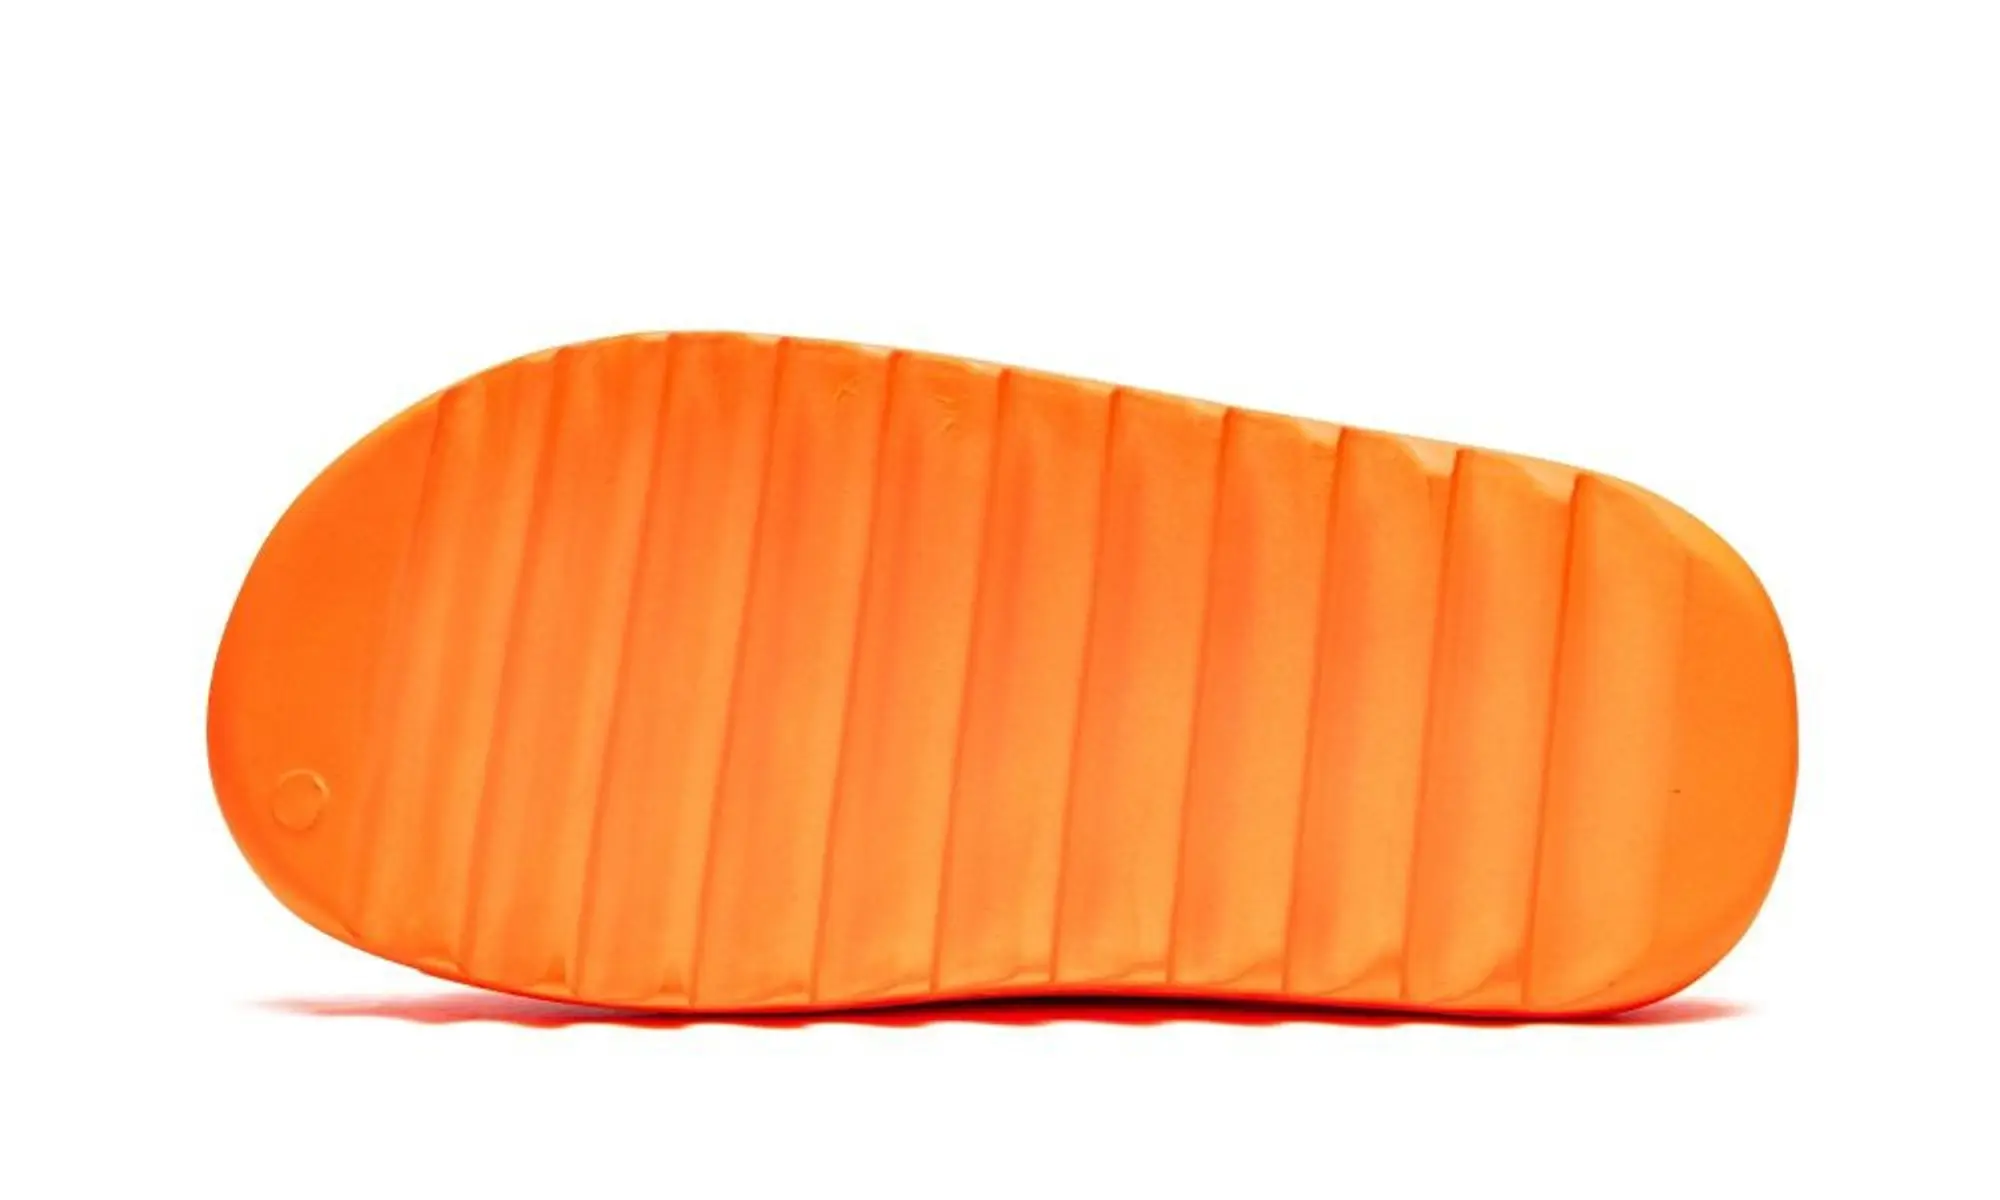 adidas Yeezy Slides Enflame Orange Shoes